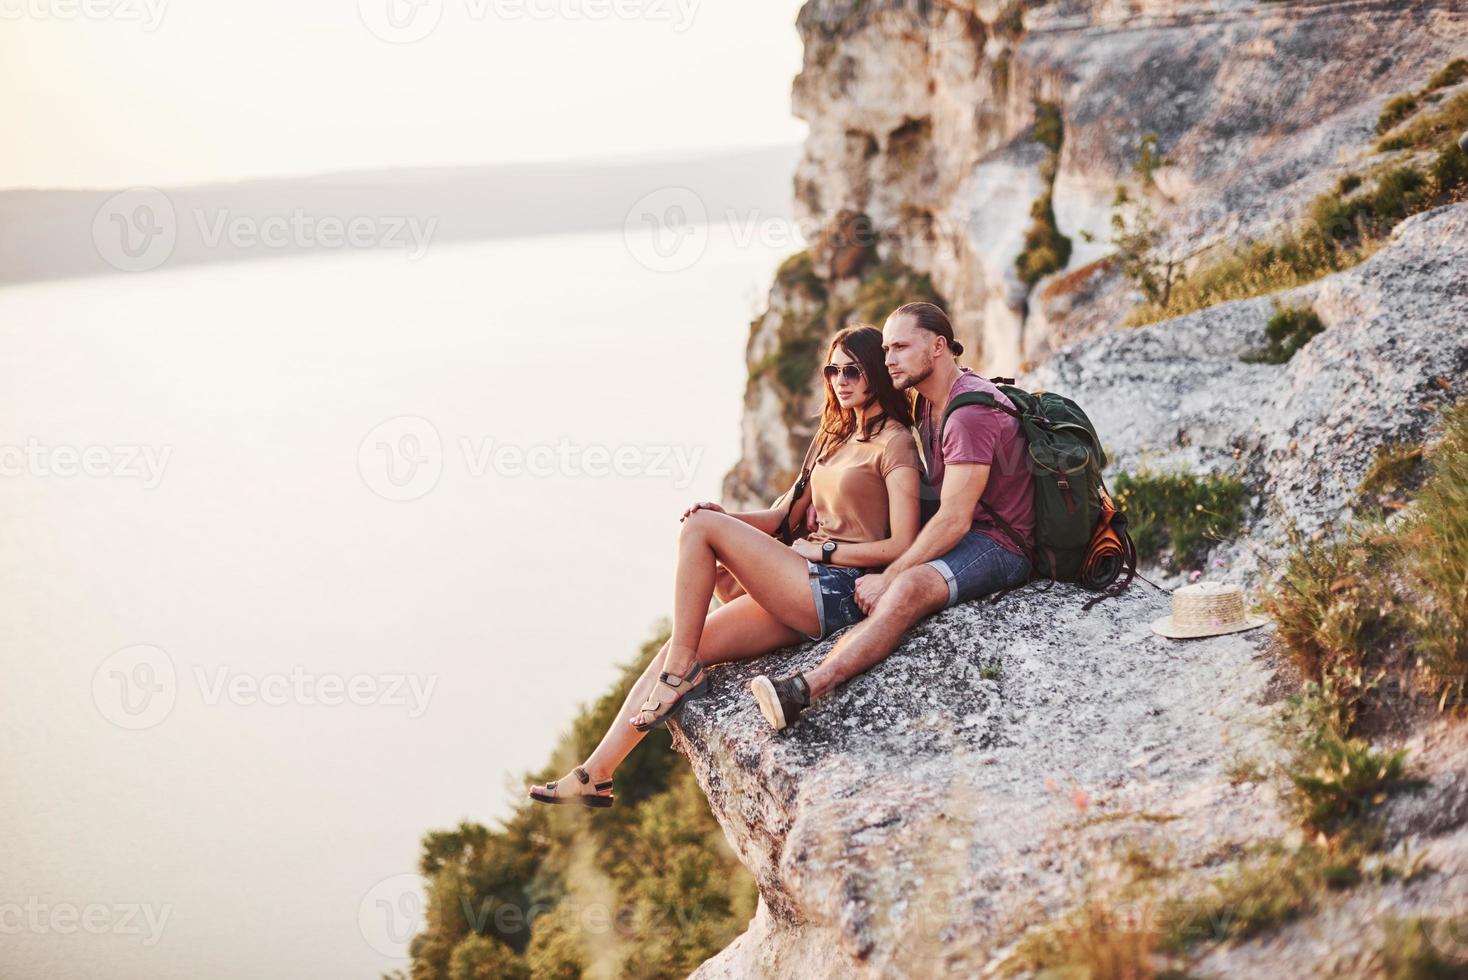 cerca del borde. pareja joven descansando de caminar al borde de la montaña. se pregunta qué tan lejos está la otra costa foto